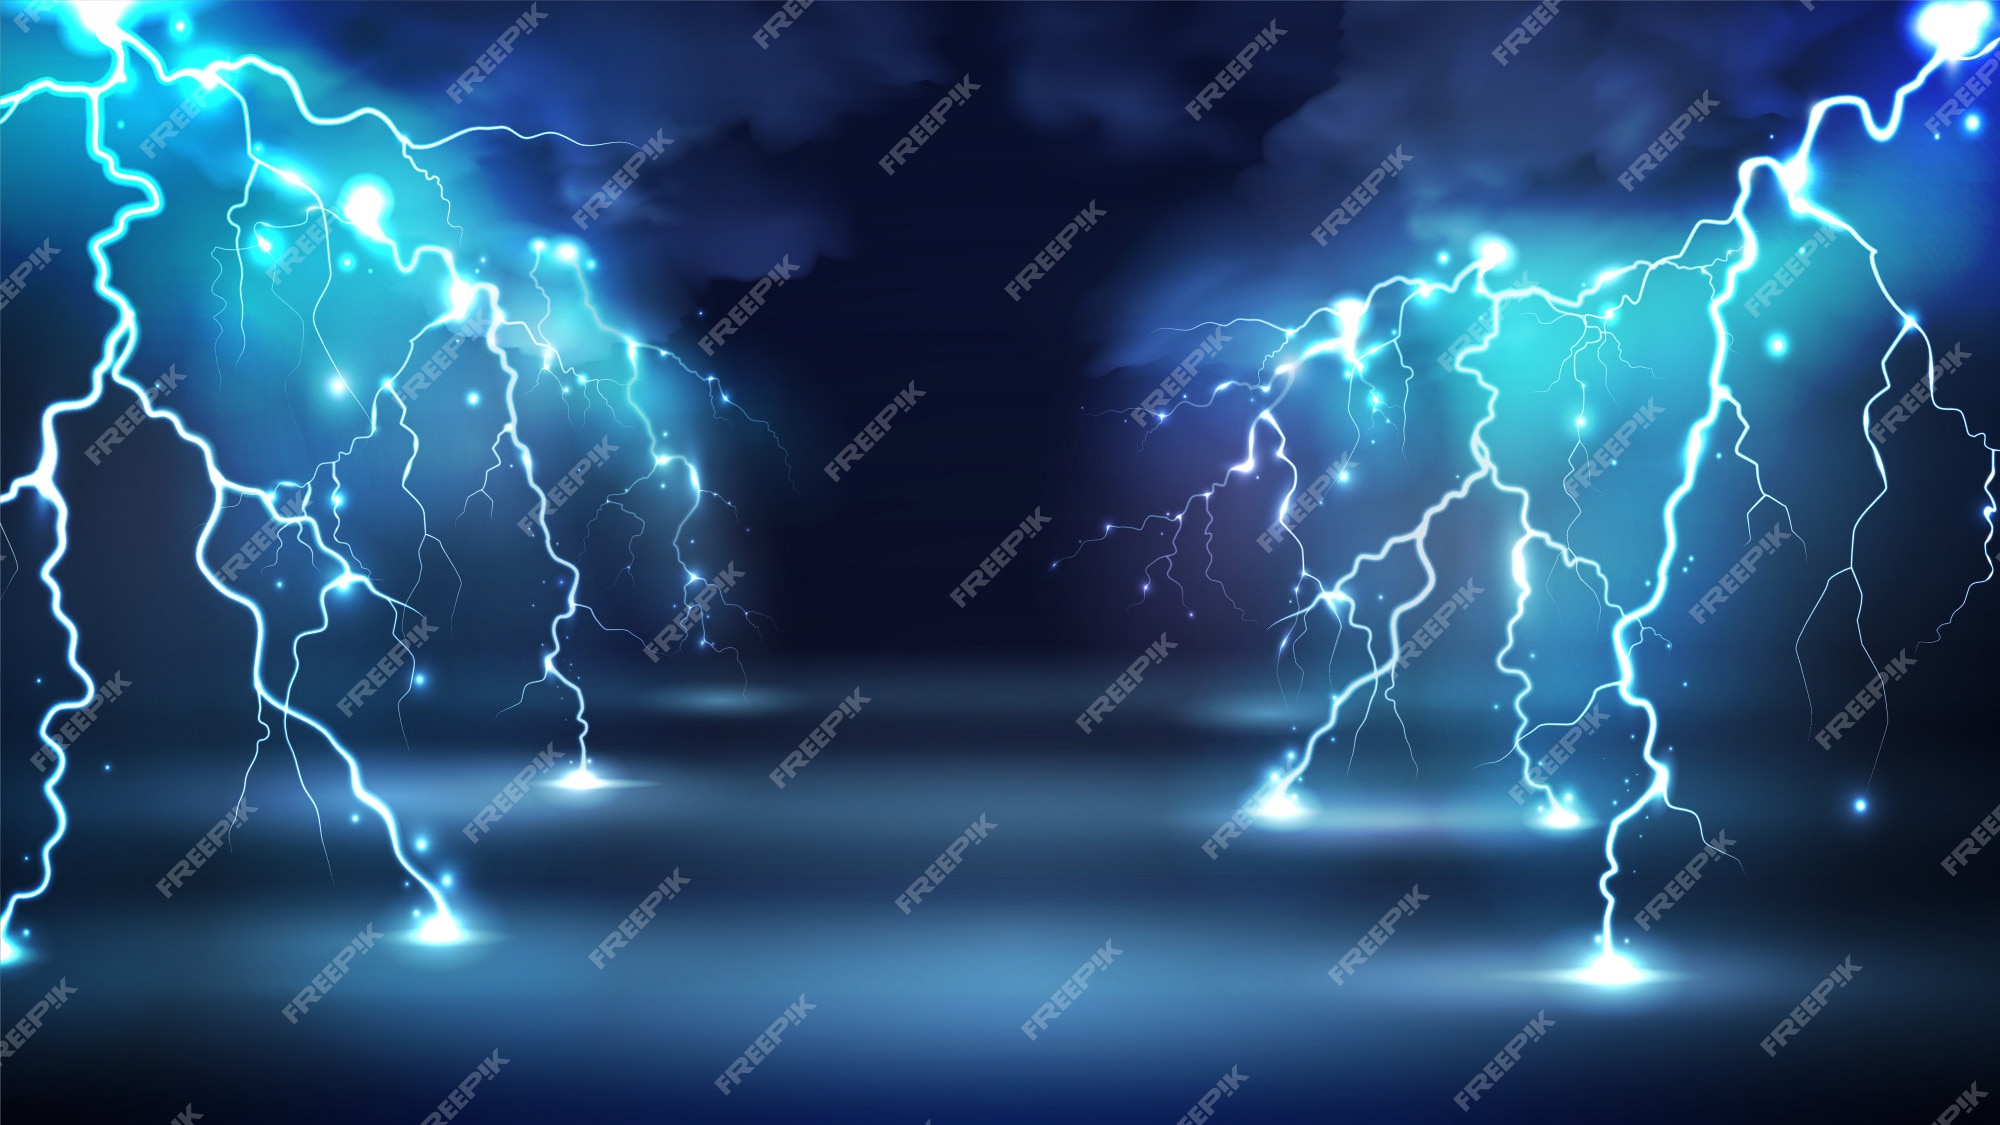 Blue Lightning Images - Free Download on Freepik